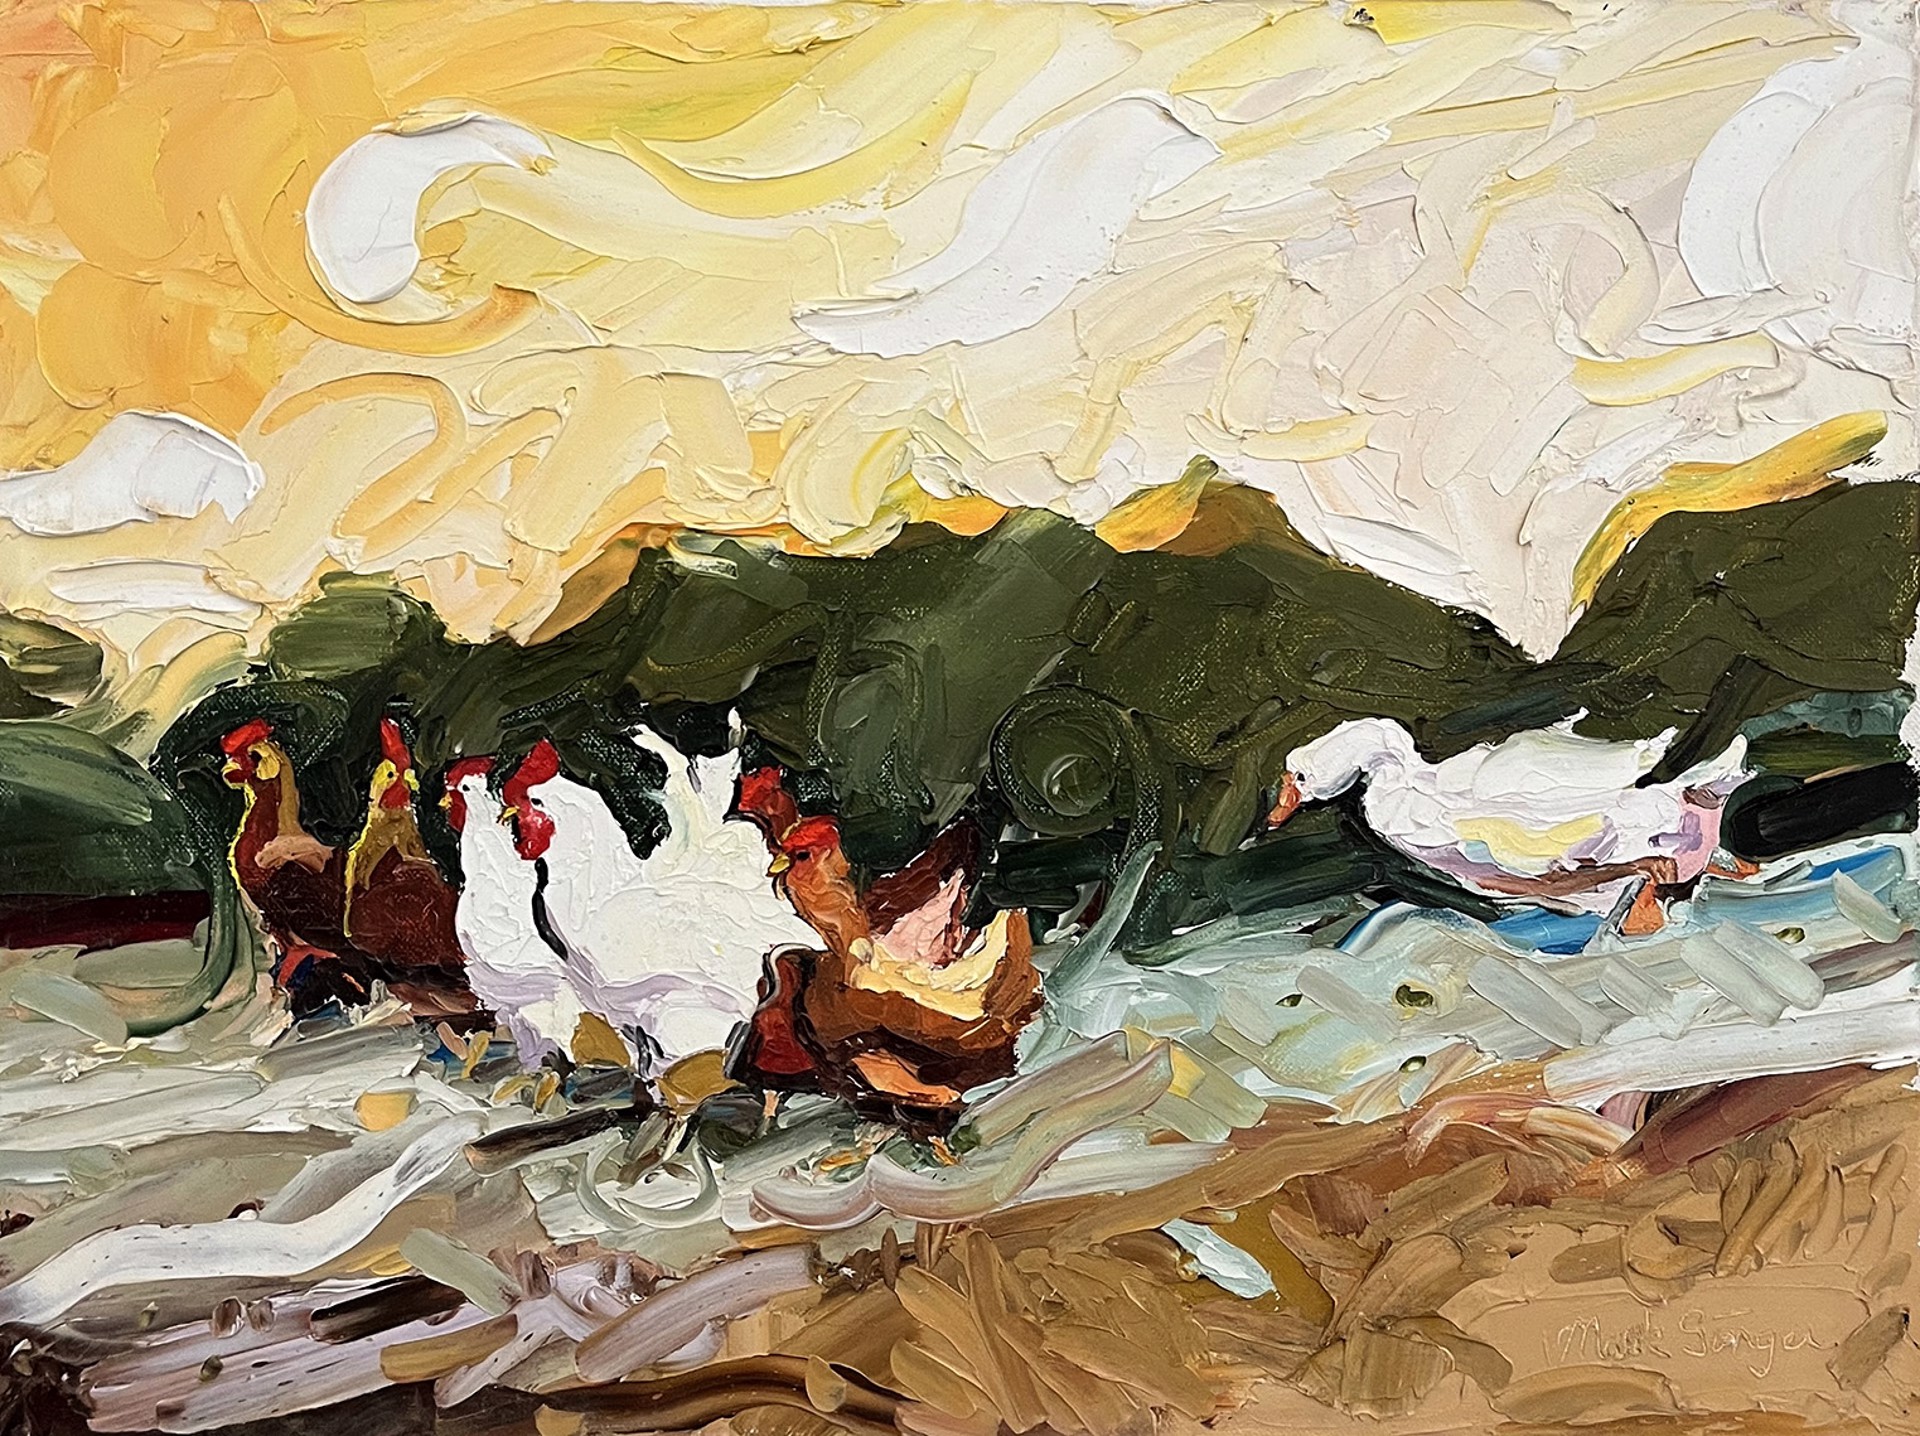 Herding Chickens by Mark Singer